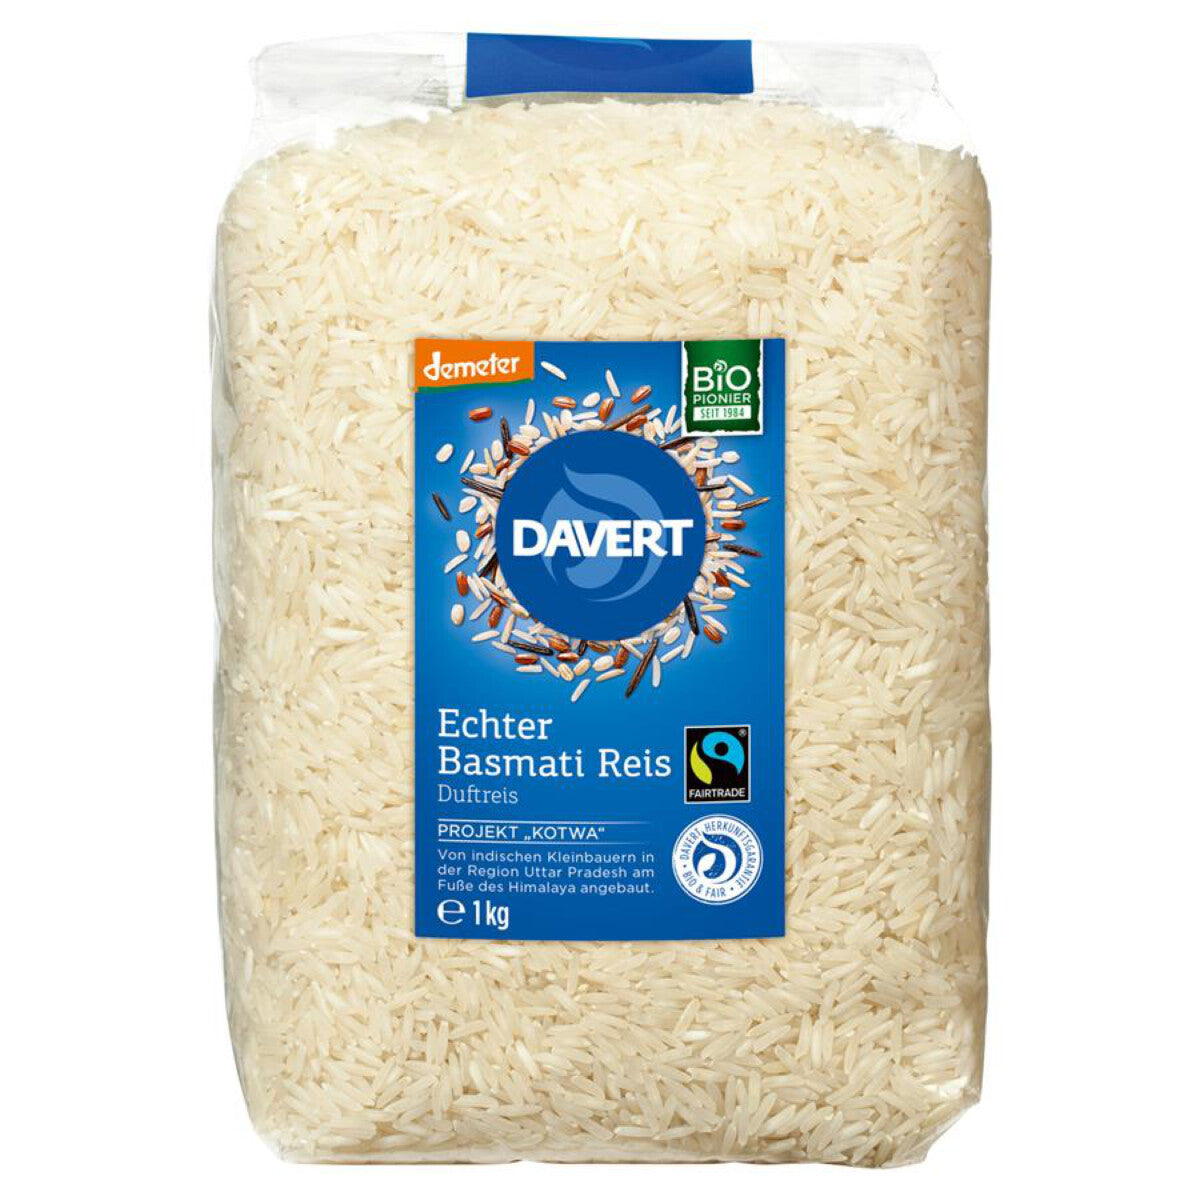 DAVERT Basmati-Reis weiß - 1 kg